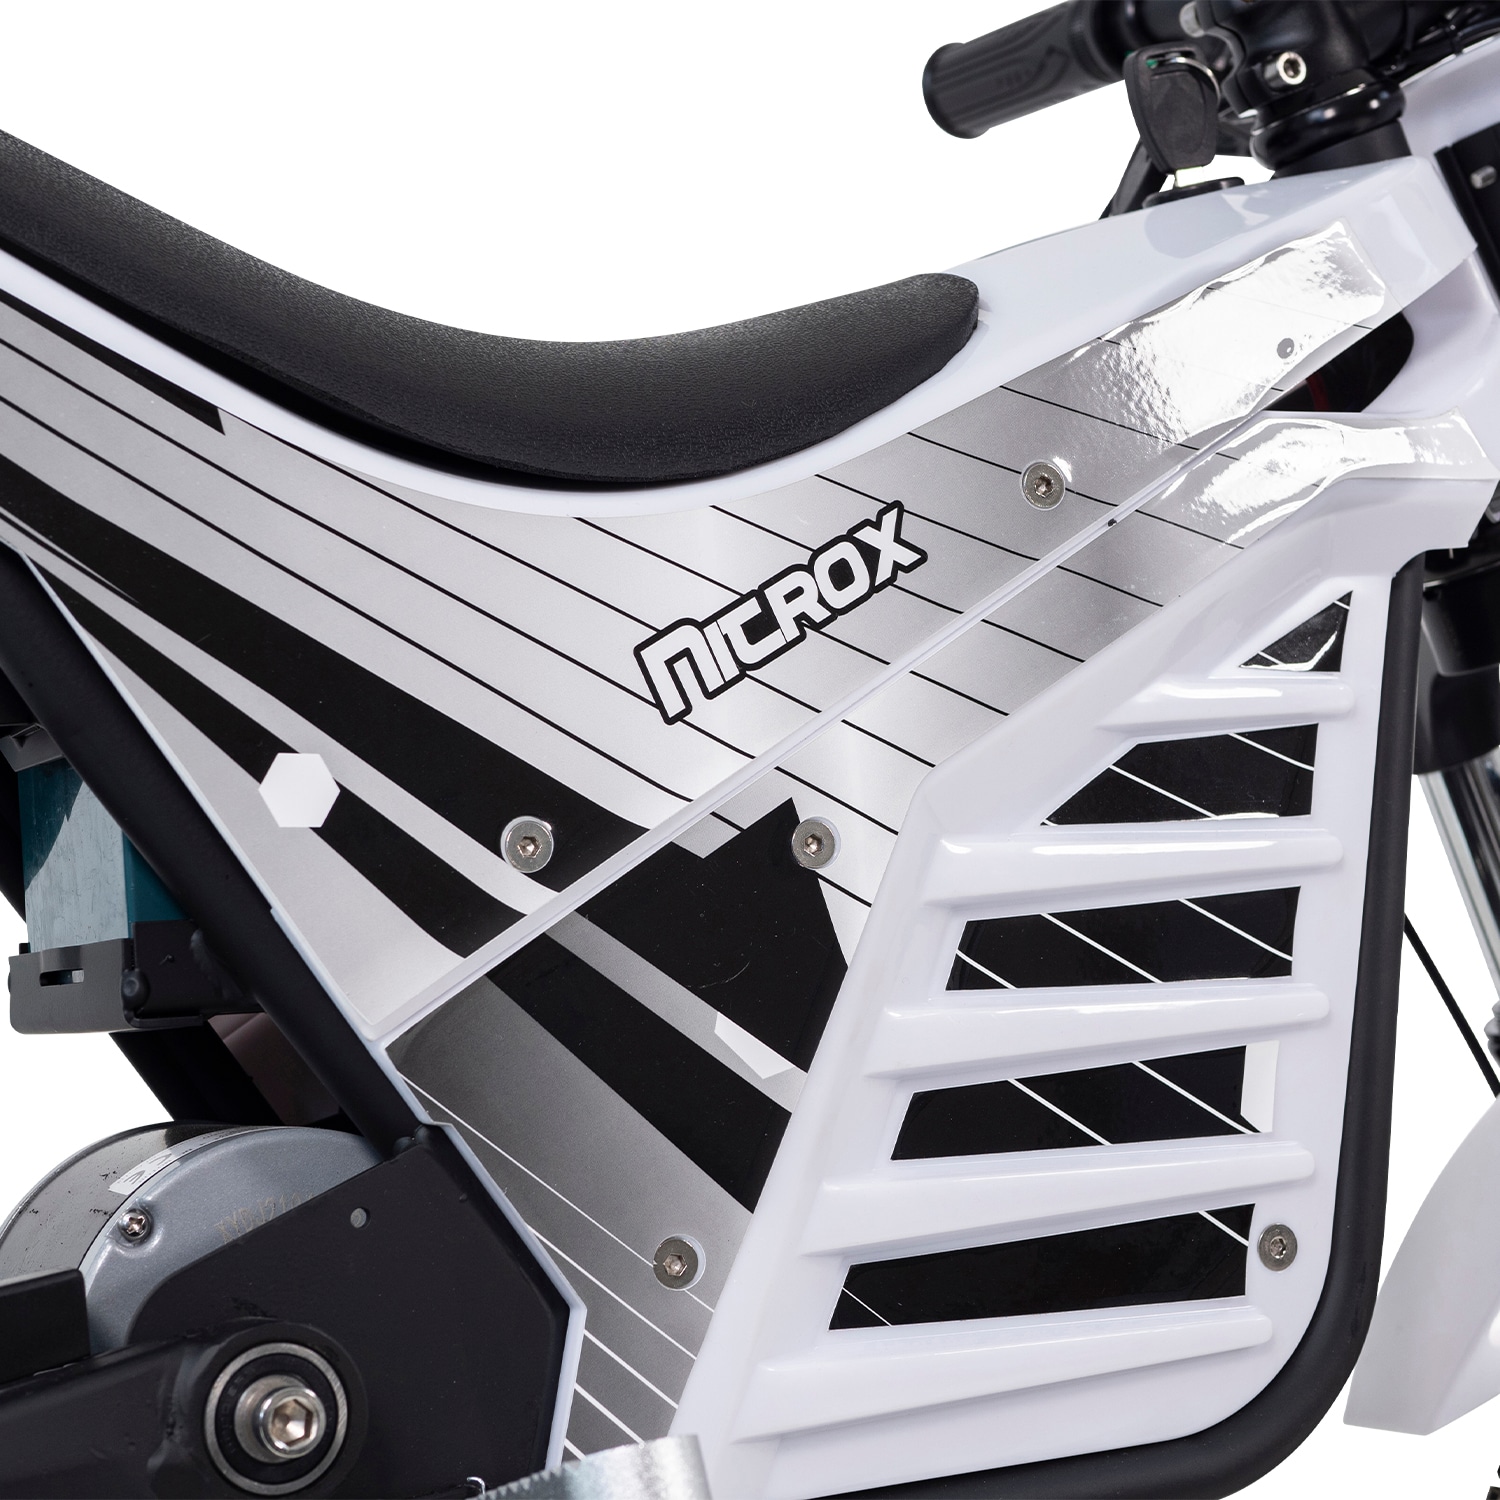 Elektrisk Dirtbike Nitrox Trial 1000W